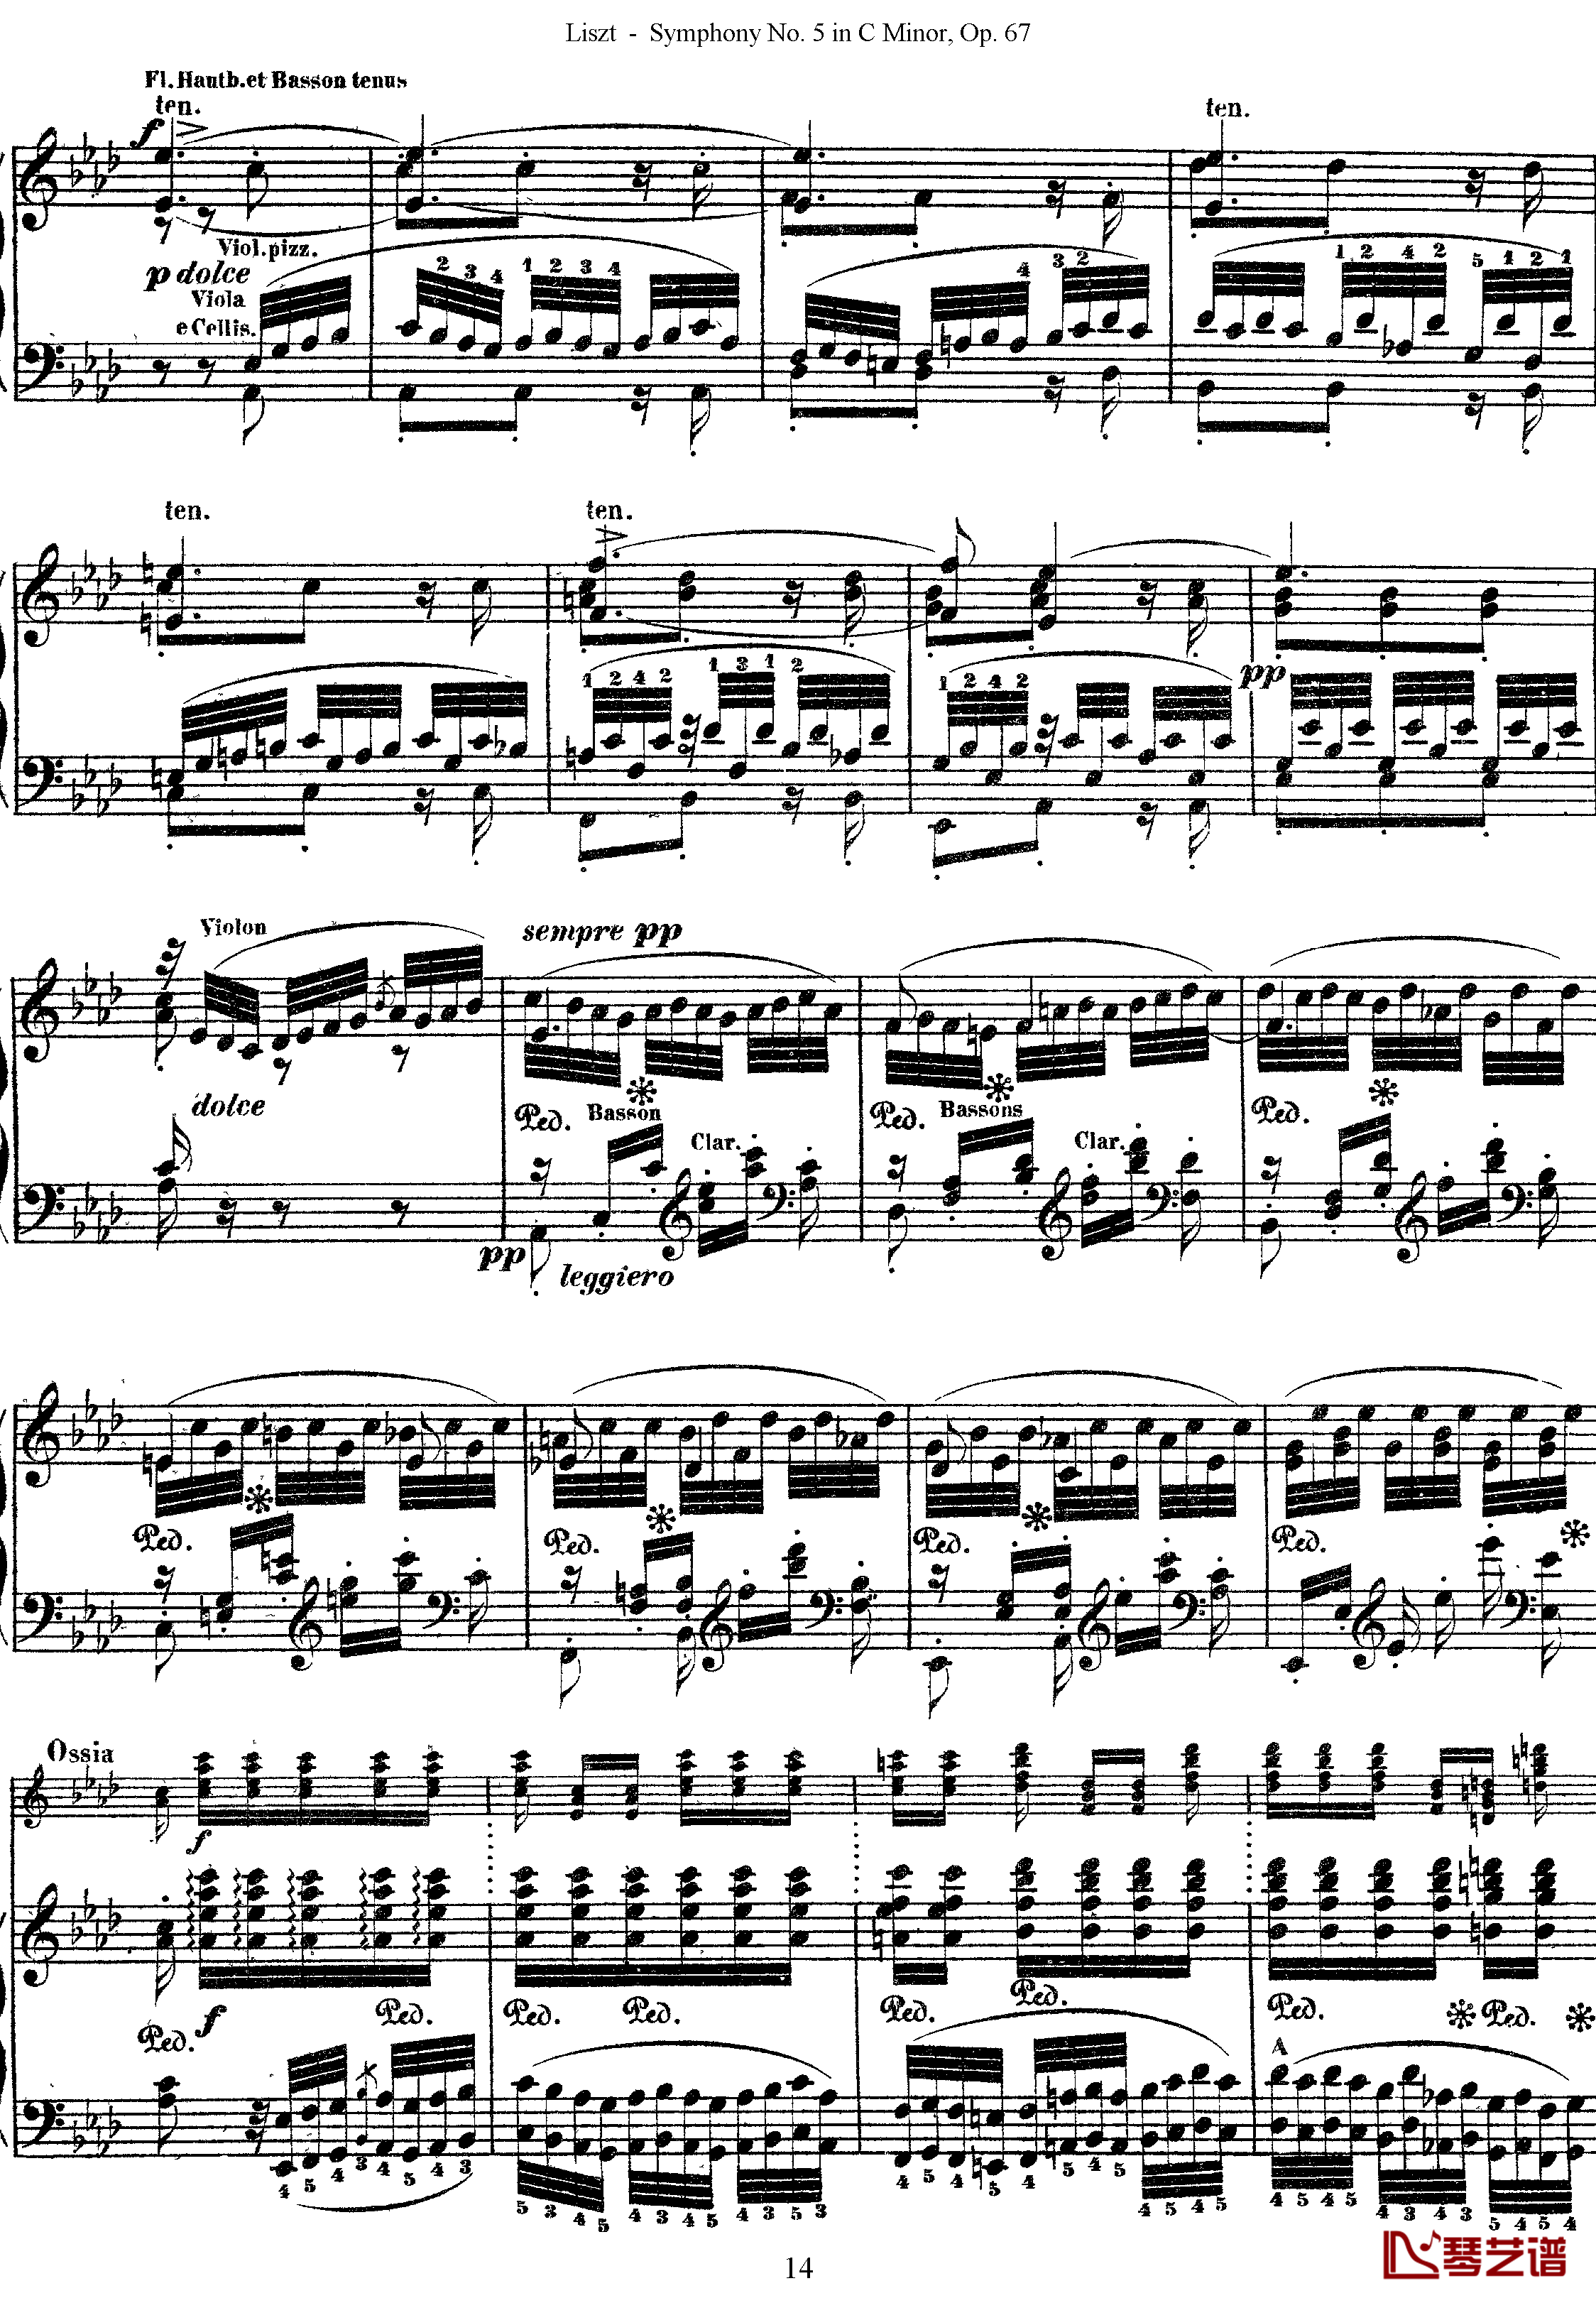 第五交响乐的钢琴曲钢琴谱-李斯特-李斯特改编自贝多芬14